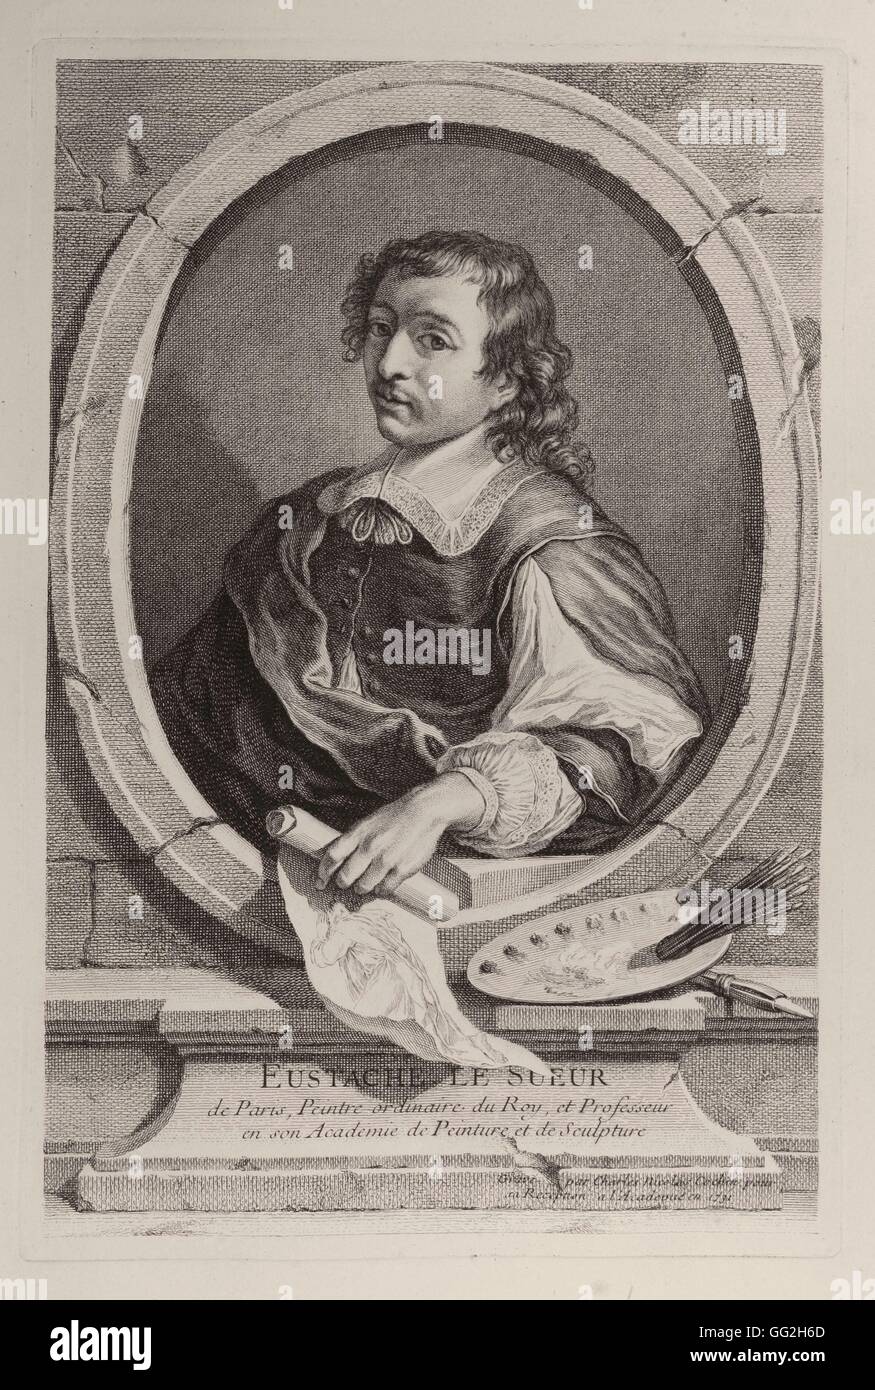 Charles-Nicolas Cochin fils (giovani) Scuola di francese Eustache Lesueur o Le Sueur, (1616-1655), francese pittore e disegnatore, talvolta soprannominato 'il francese Raphaël.". Foto Stock